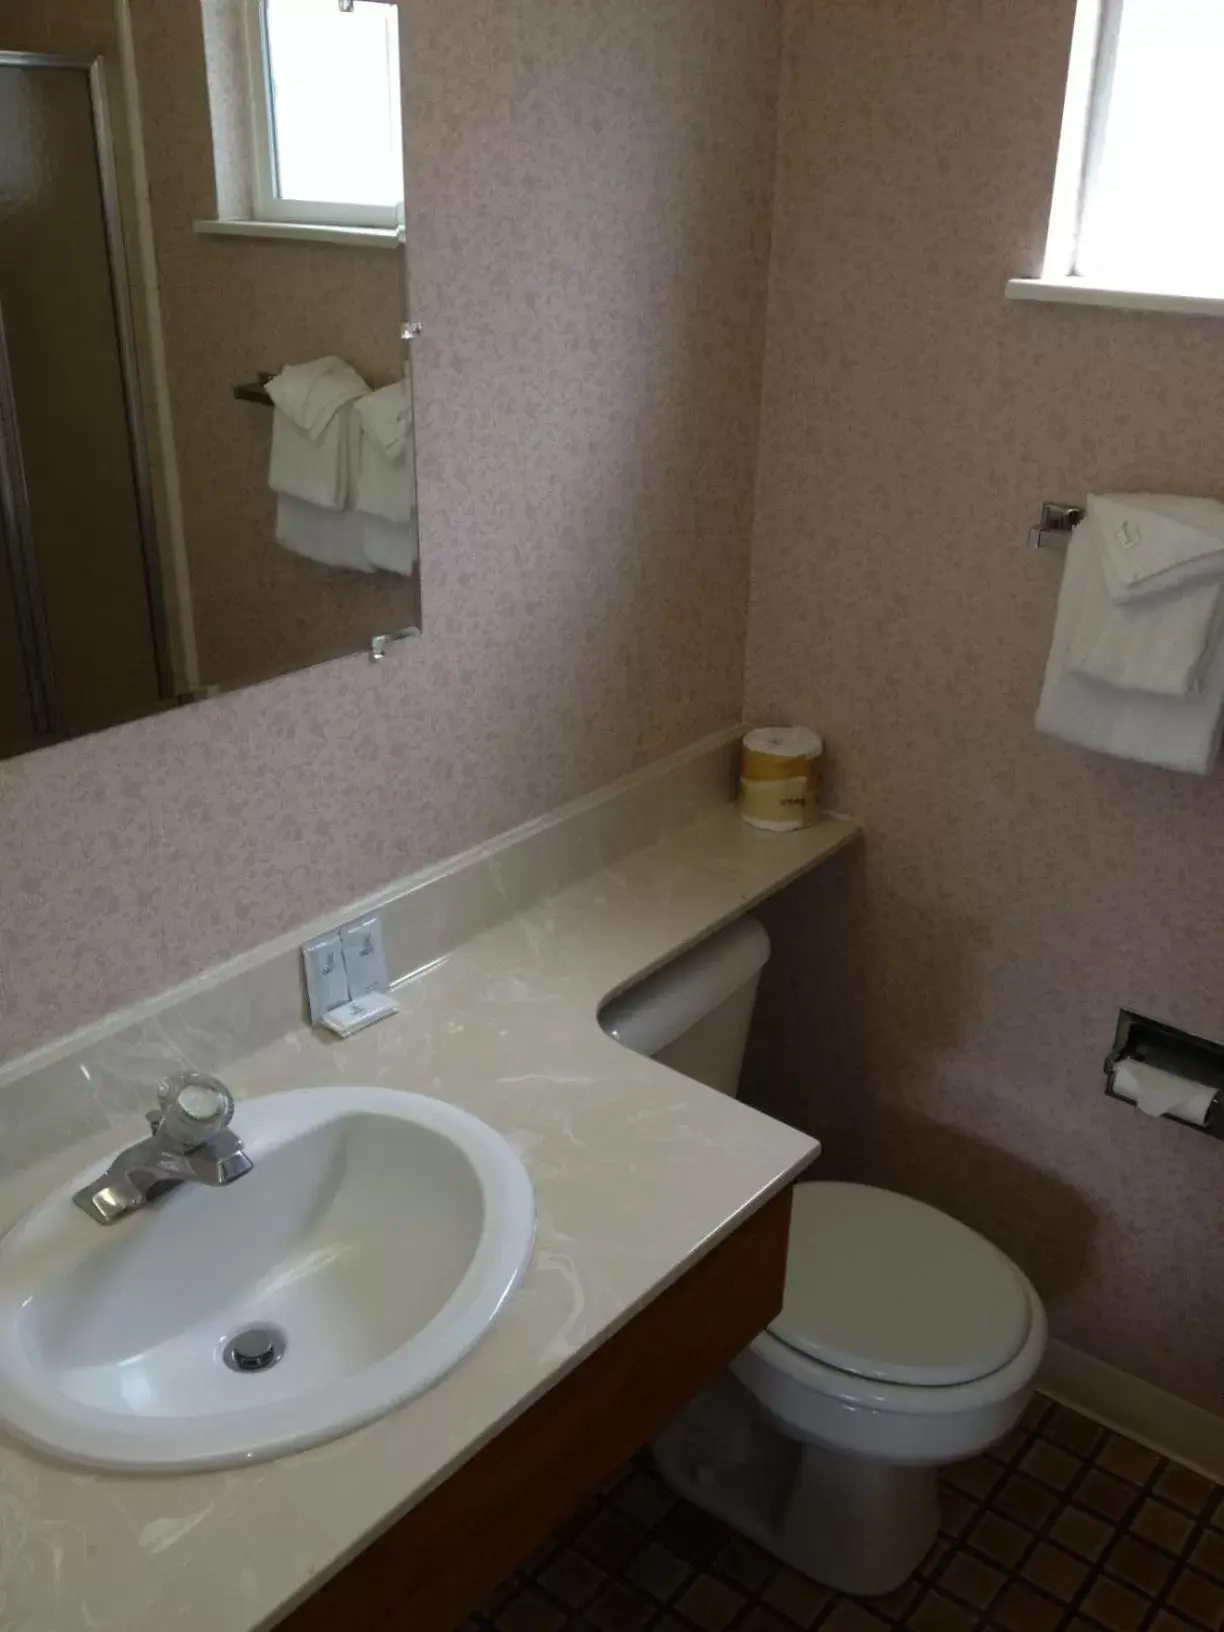 Bathroom in Country Inn